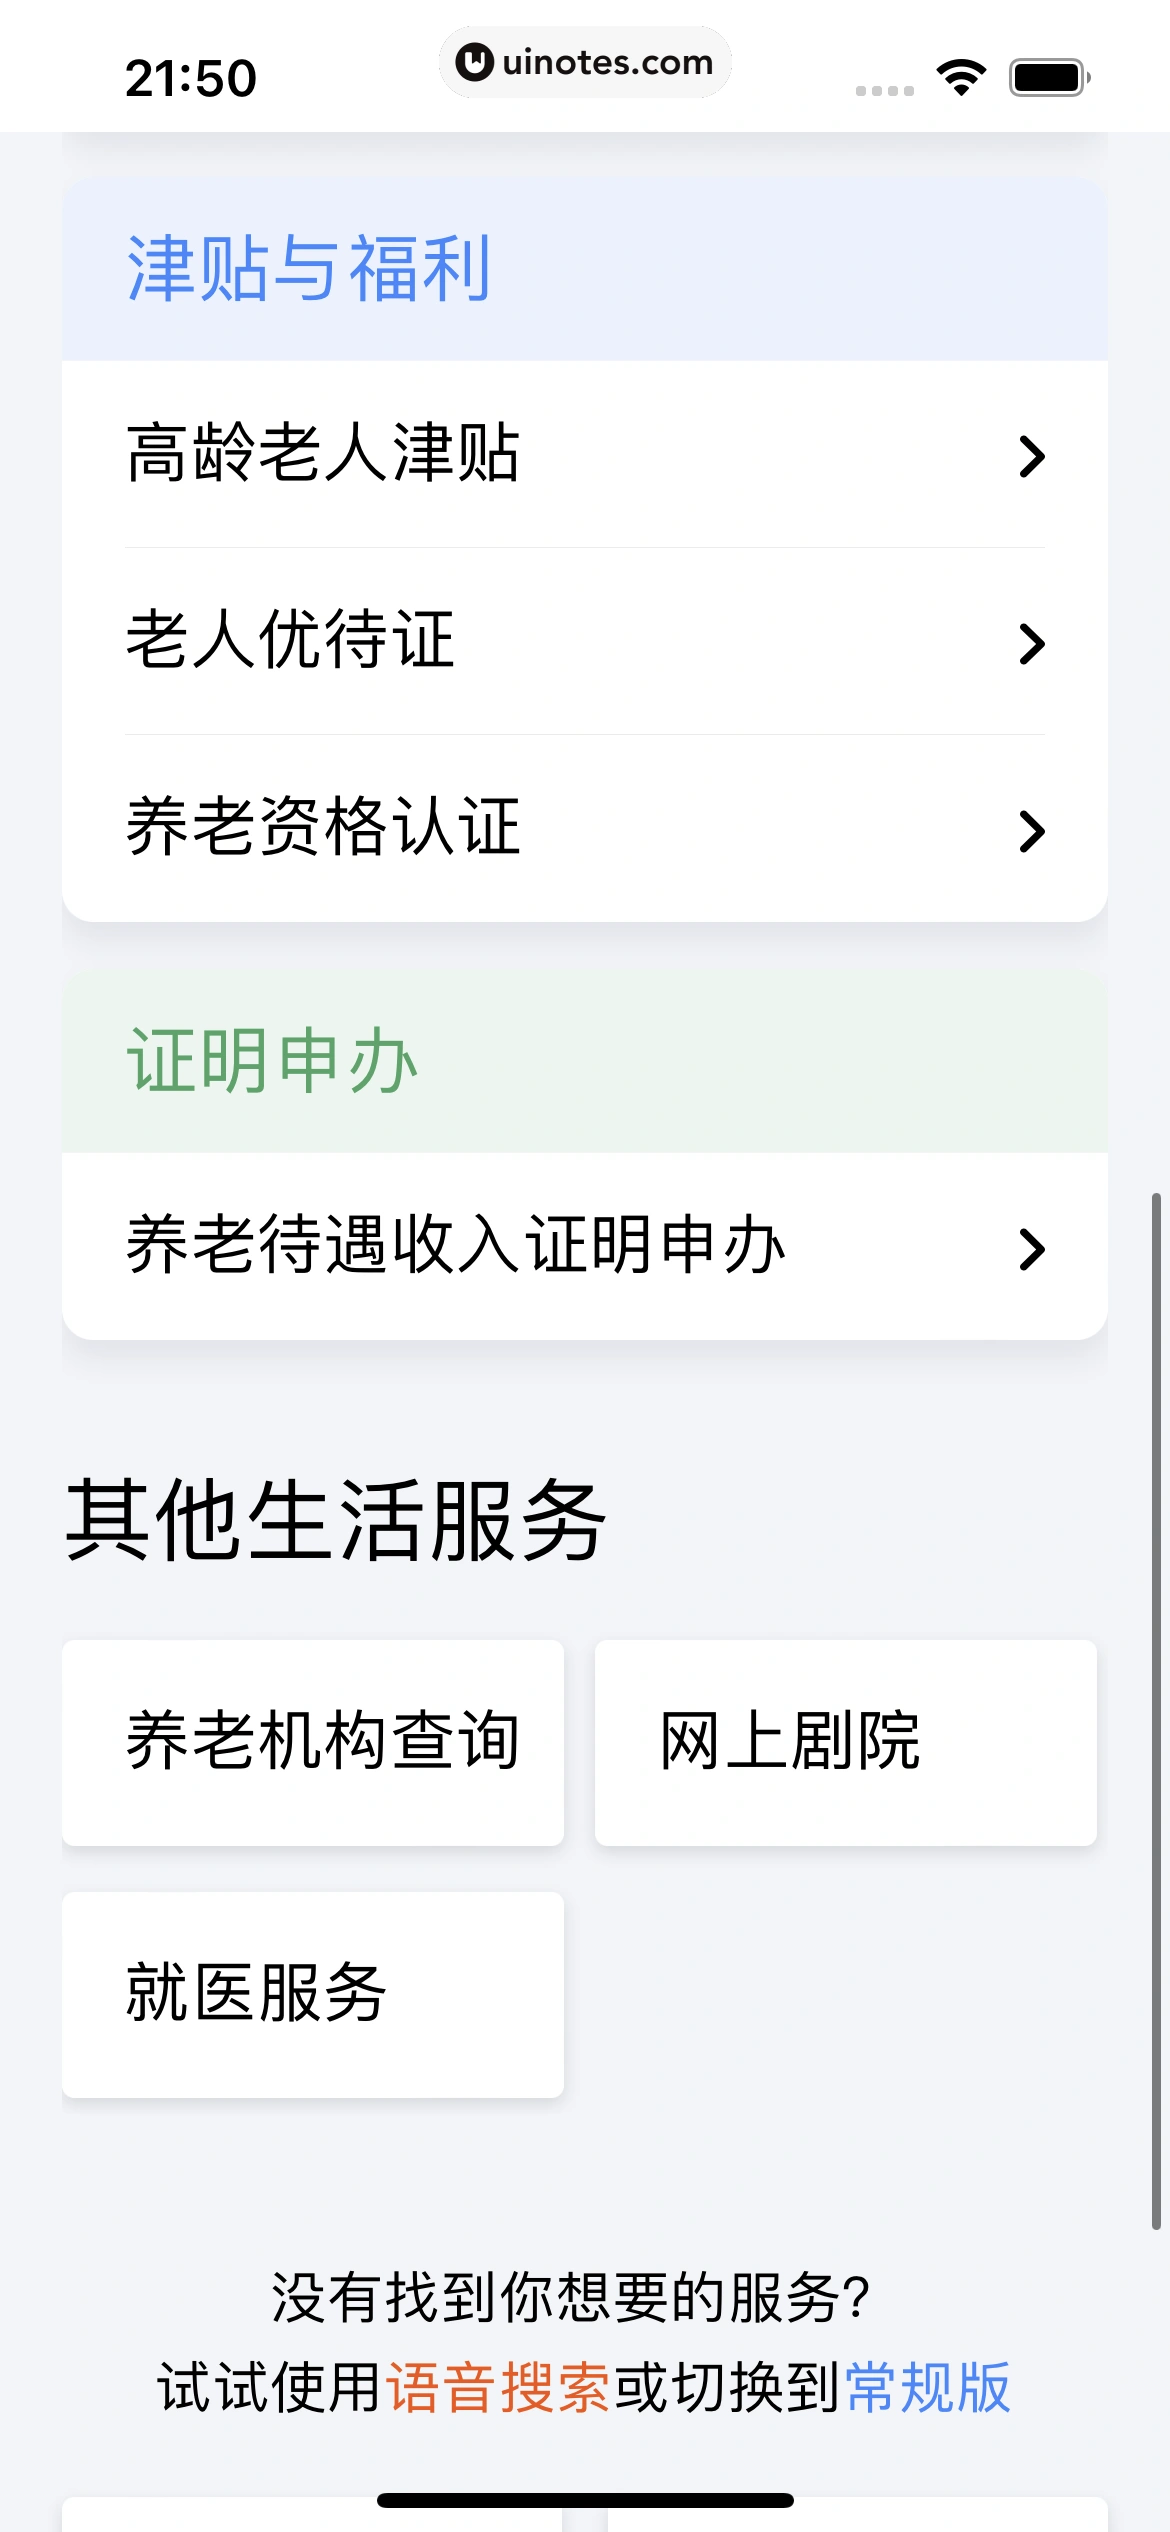 粤省事 App 截图 065 - UI Notes